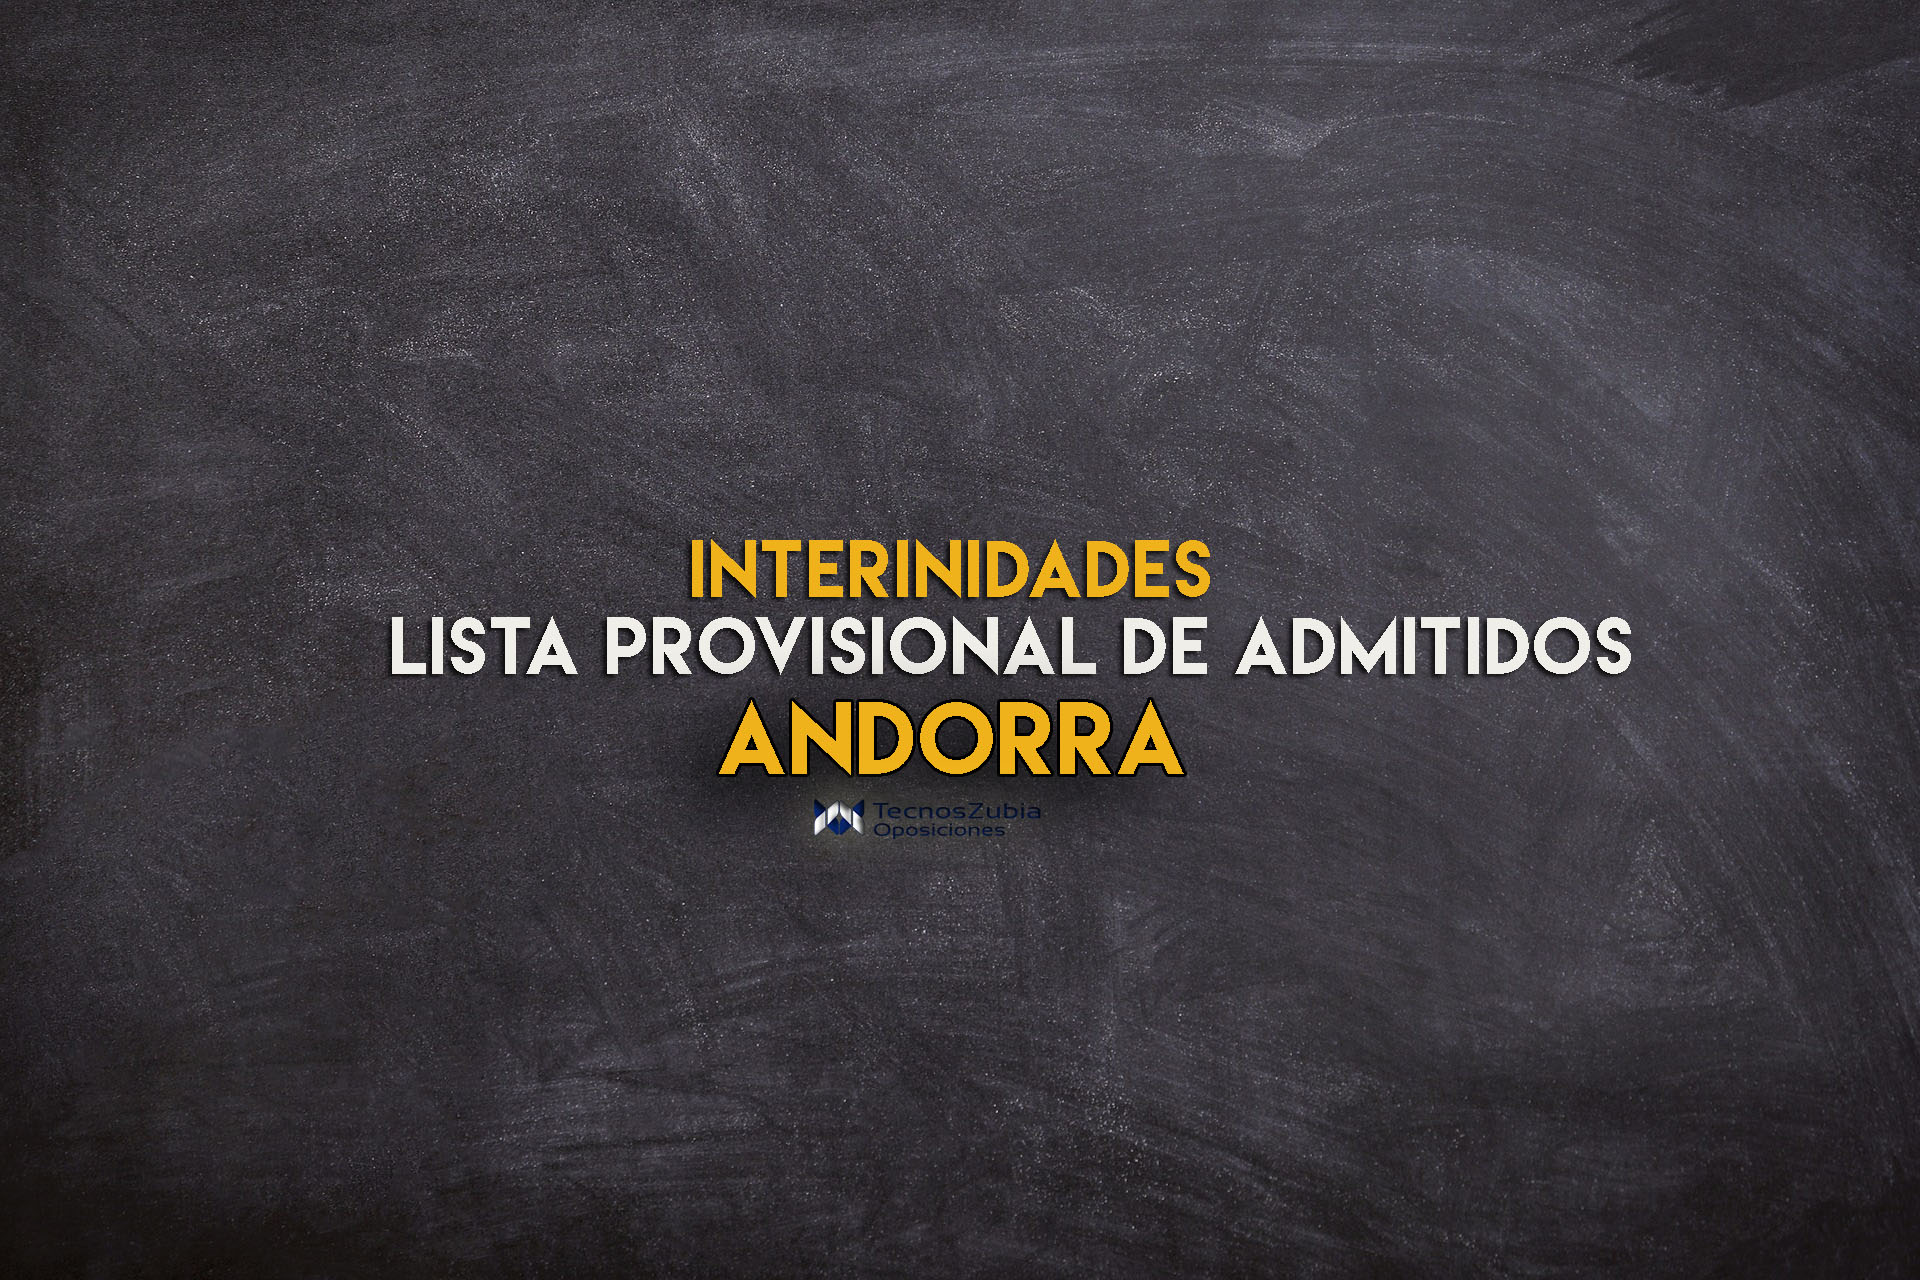 Interinidades Andorra. Lista provisional de admitidos.